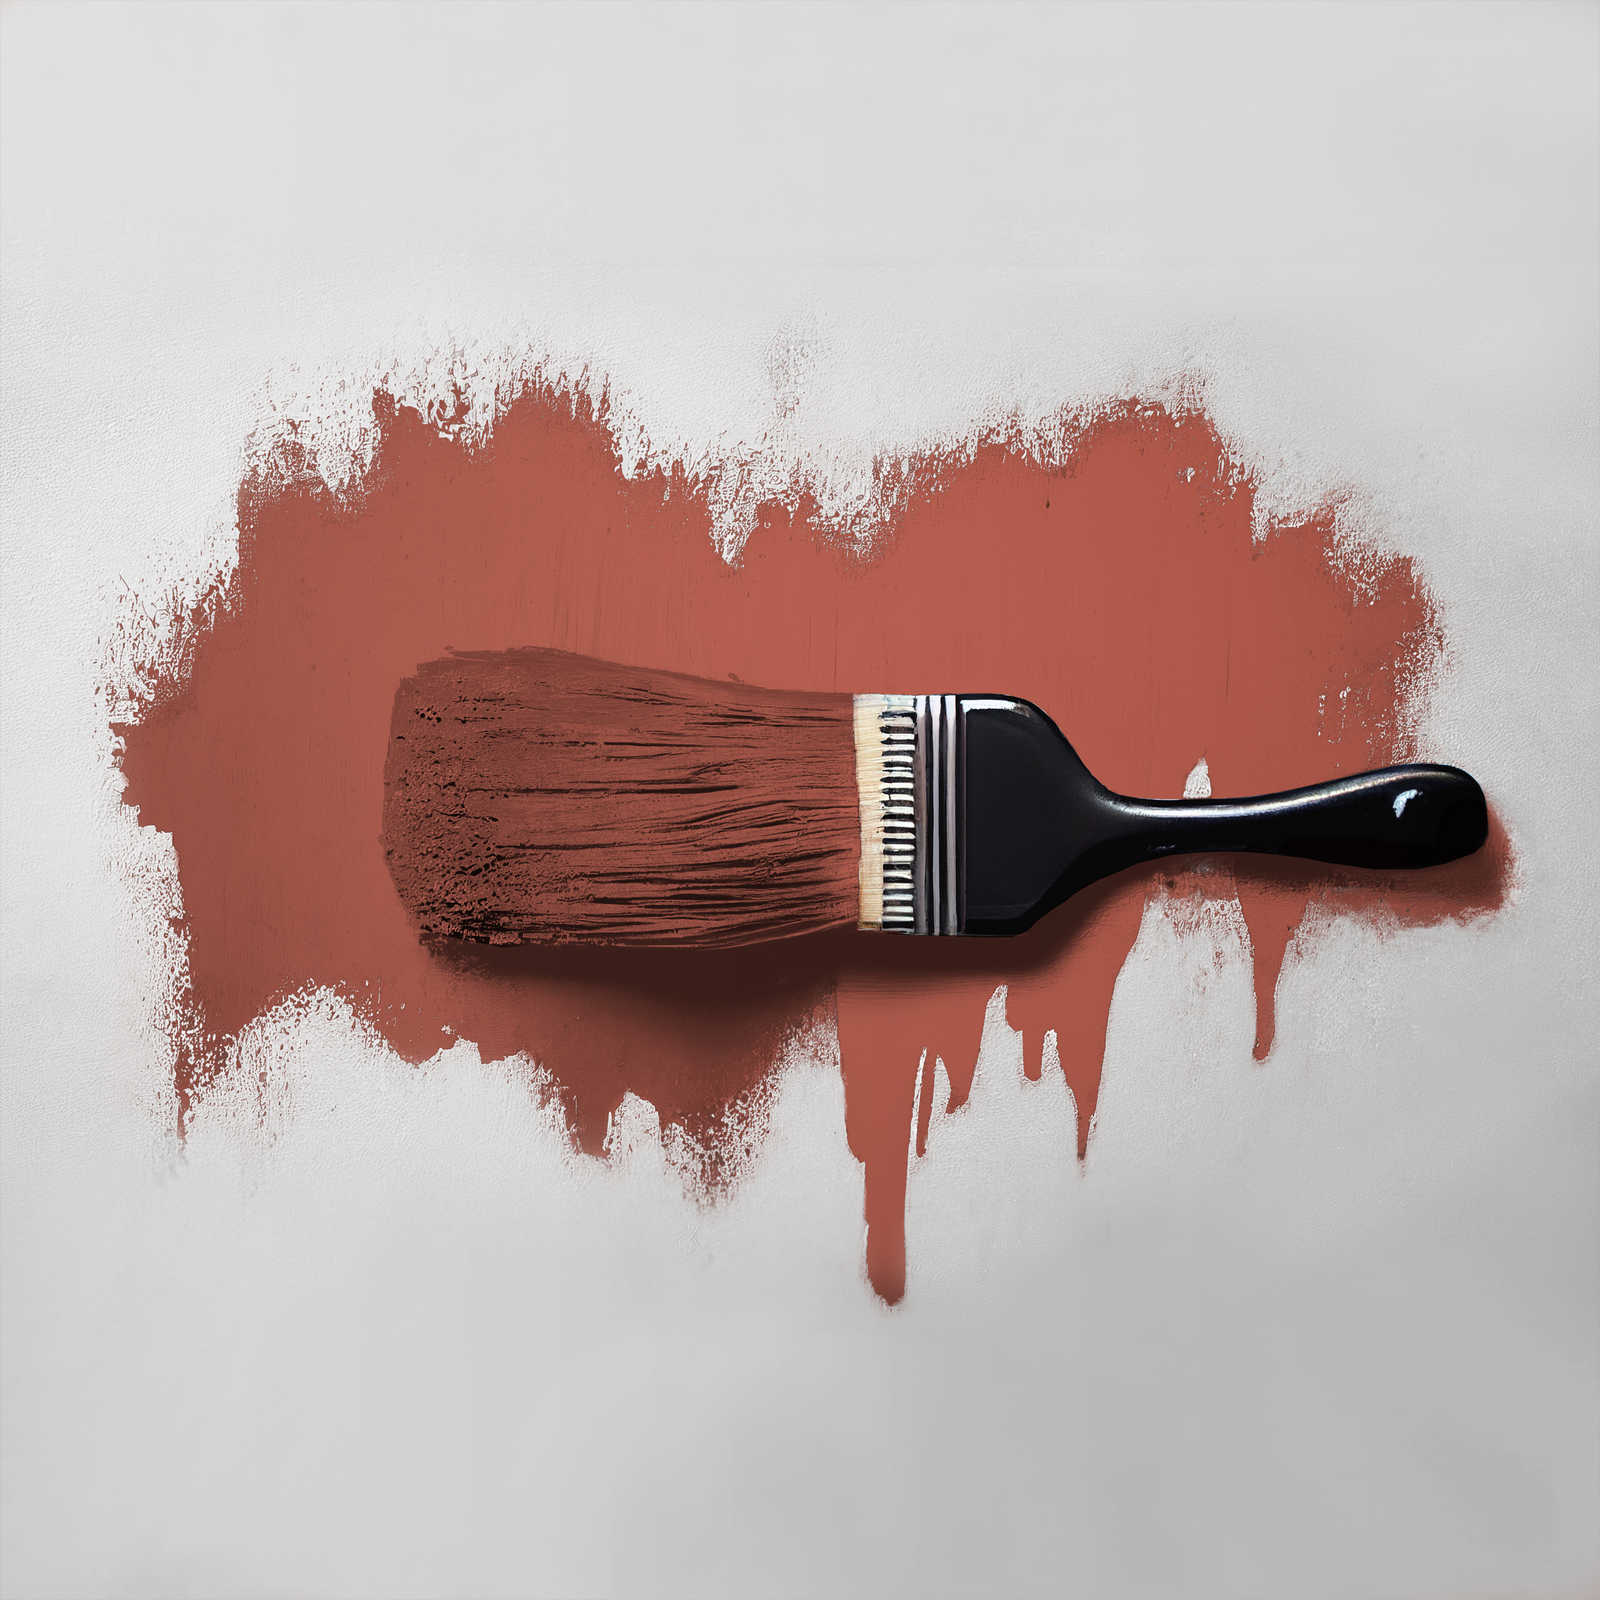             Pittura murale TCK5013 »Simple Safron« in zafferano intenso – 2,5 litri
        